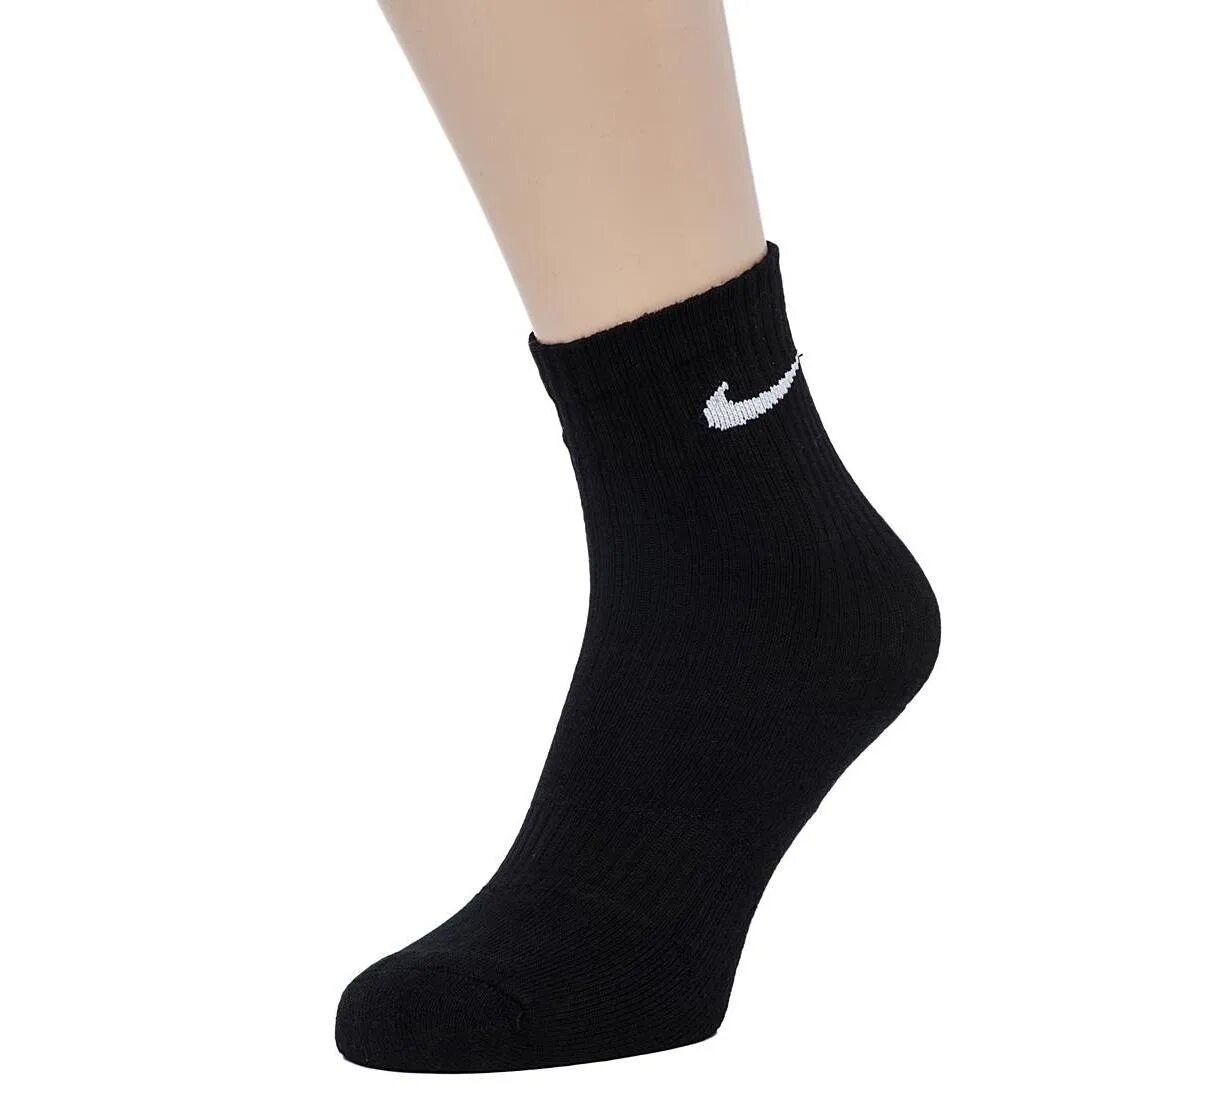 Черные носки найк. Носки Nike черные. Носки найк черные высокие. Носки найк на ноге. Носки найк черные на ноге.